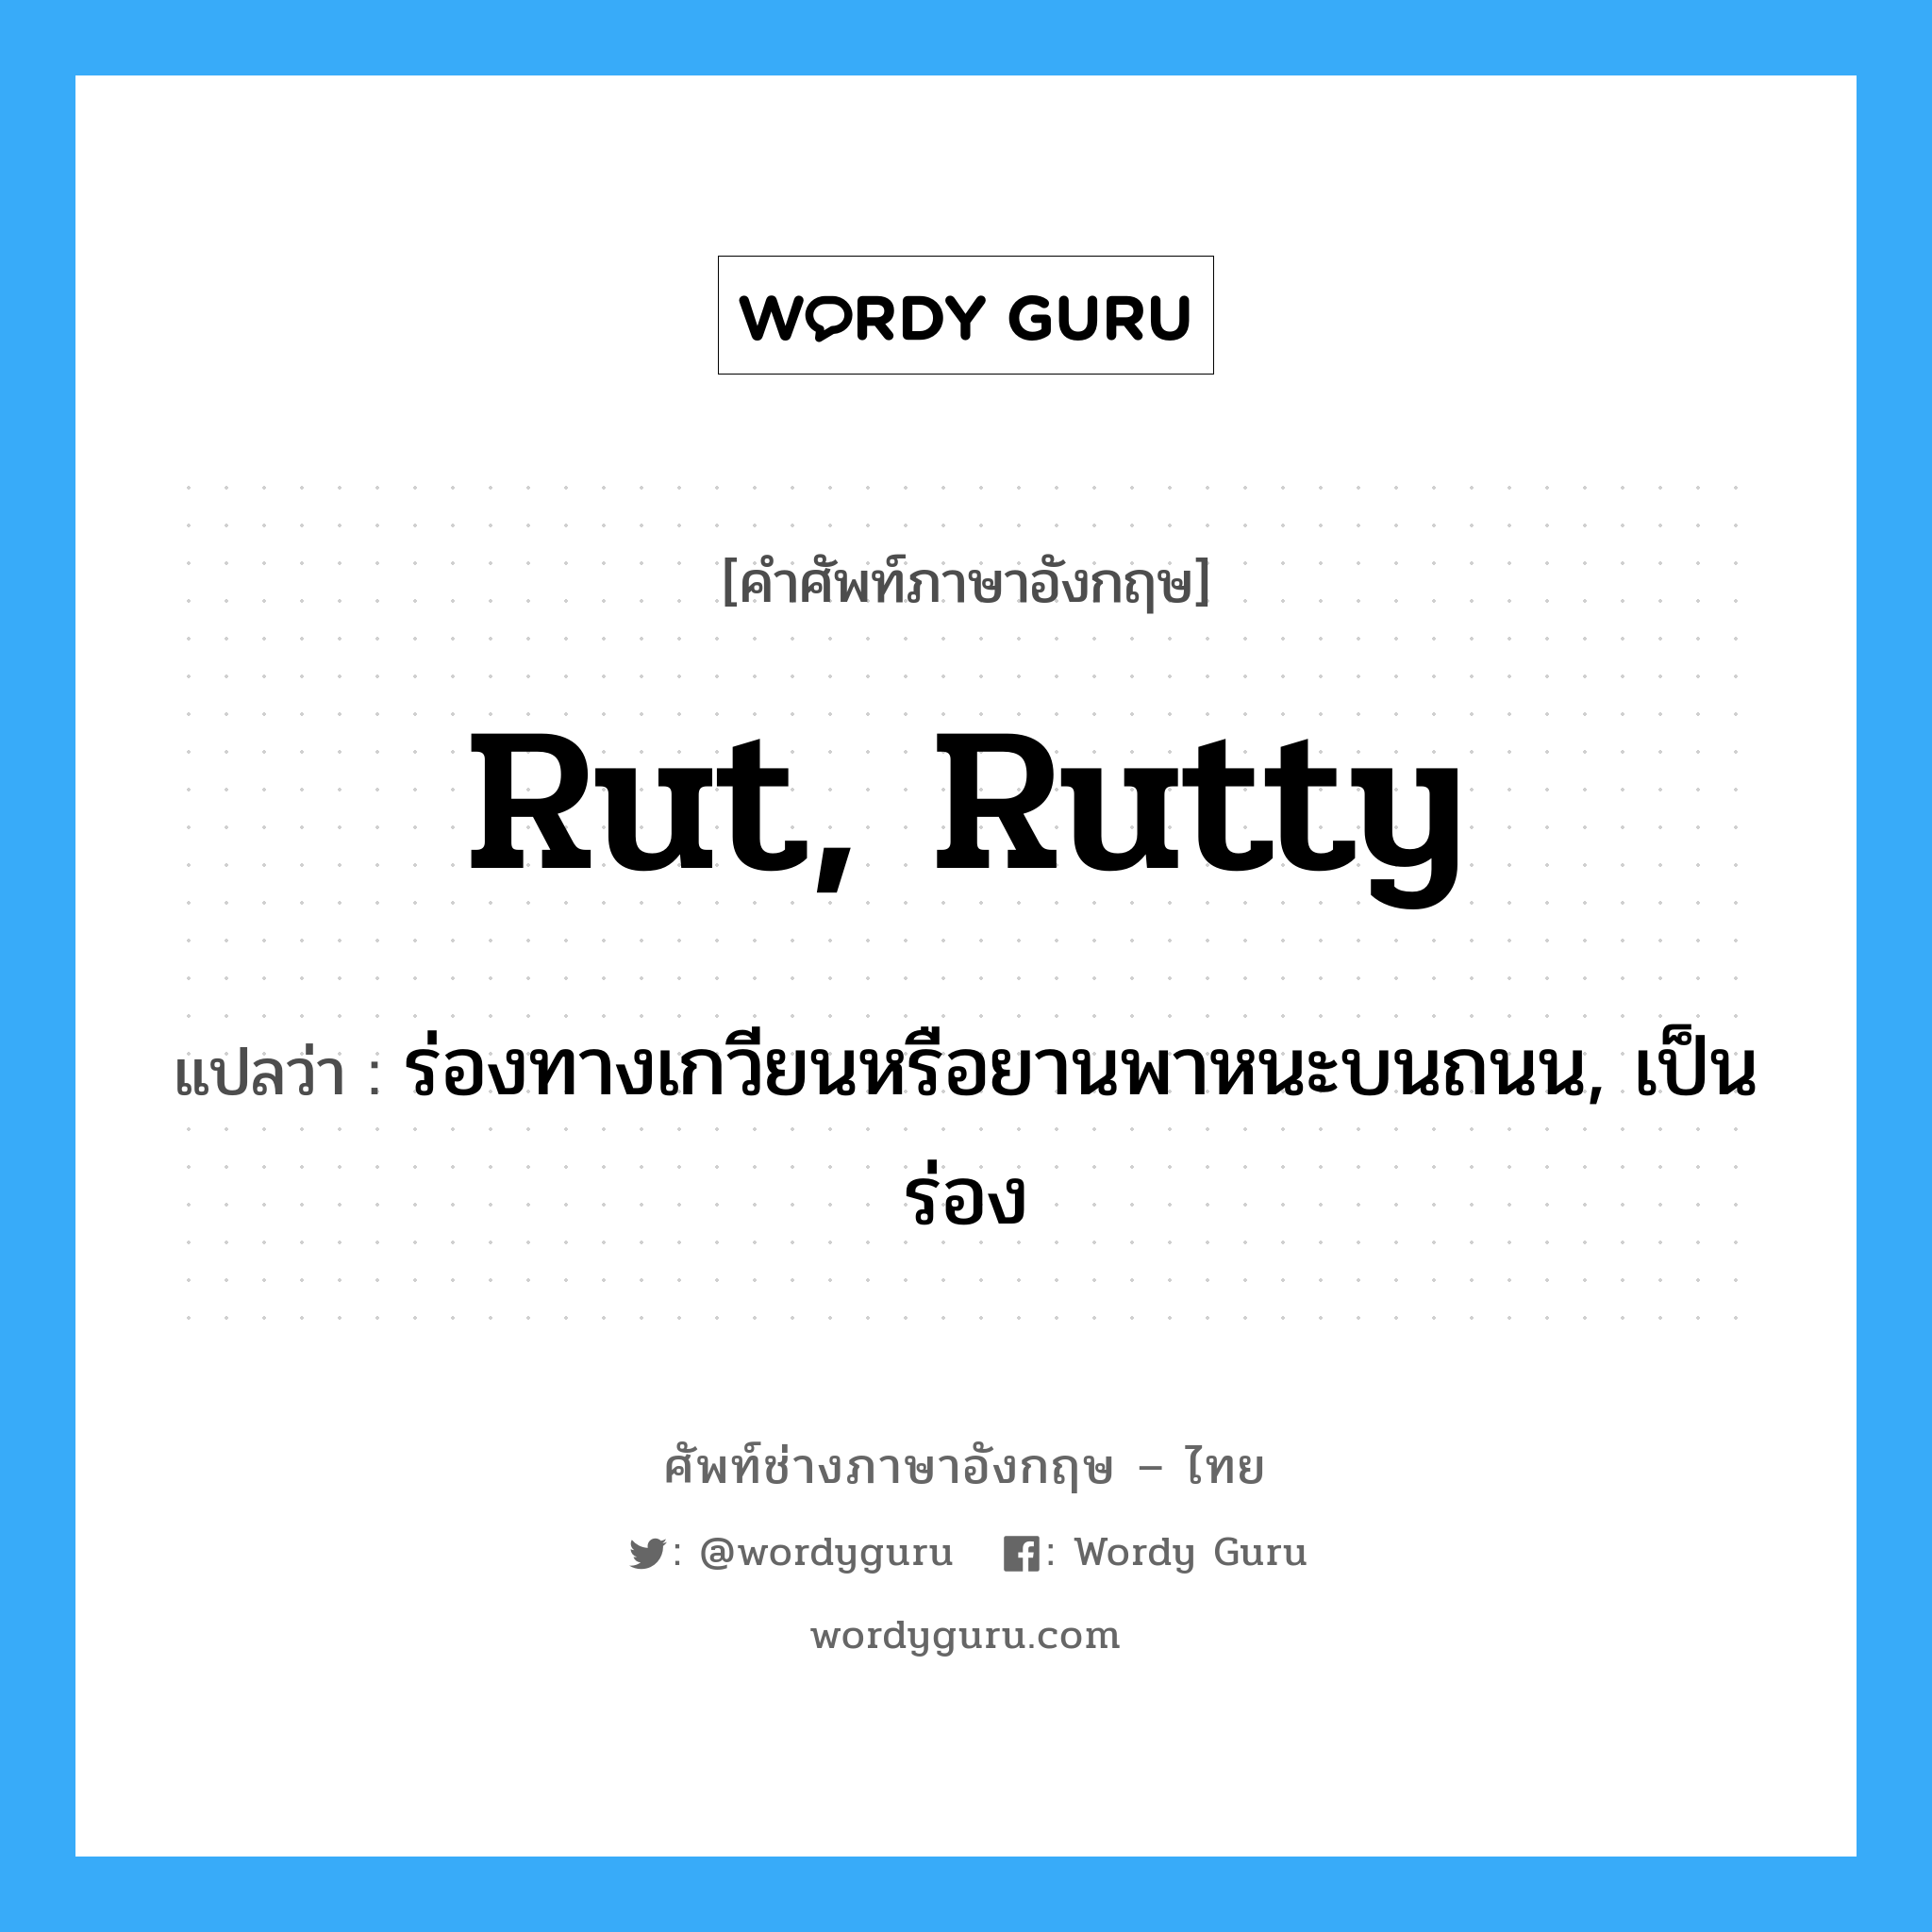 rut, rutty แปลว่า?, คำศัพท์ช่างภาษาอังกฤษ - ไทย rut, rutty คำศัพท์ภาษาอังกฤษ rut, rutty แปลว่า ร่องทางเกวียนหรือยานพาหนะบนถนน, เป็นร่อง